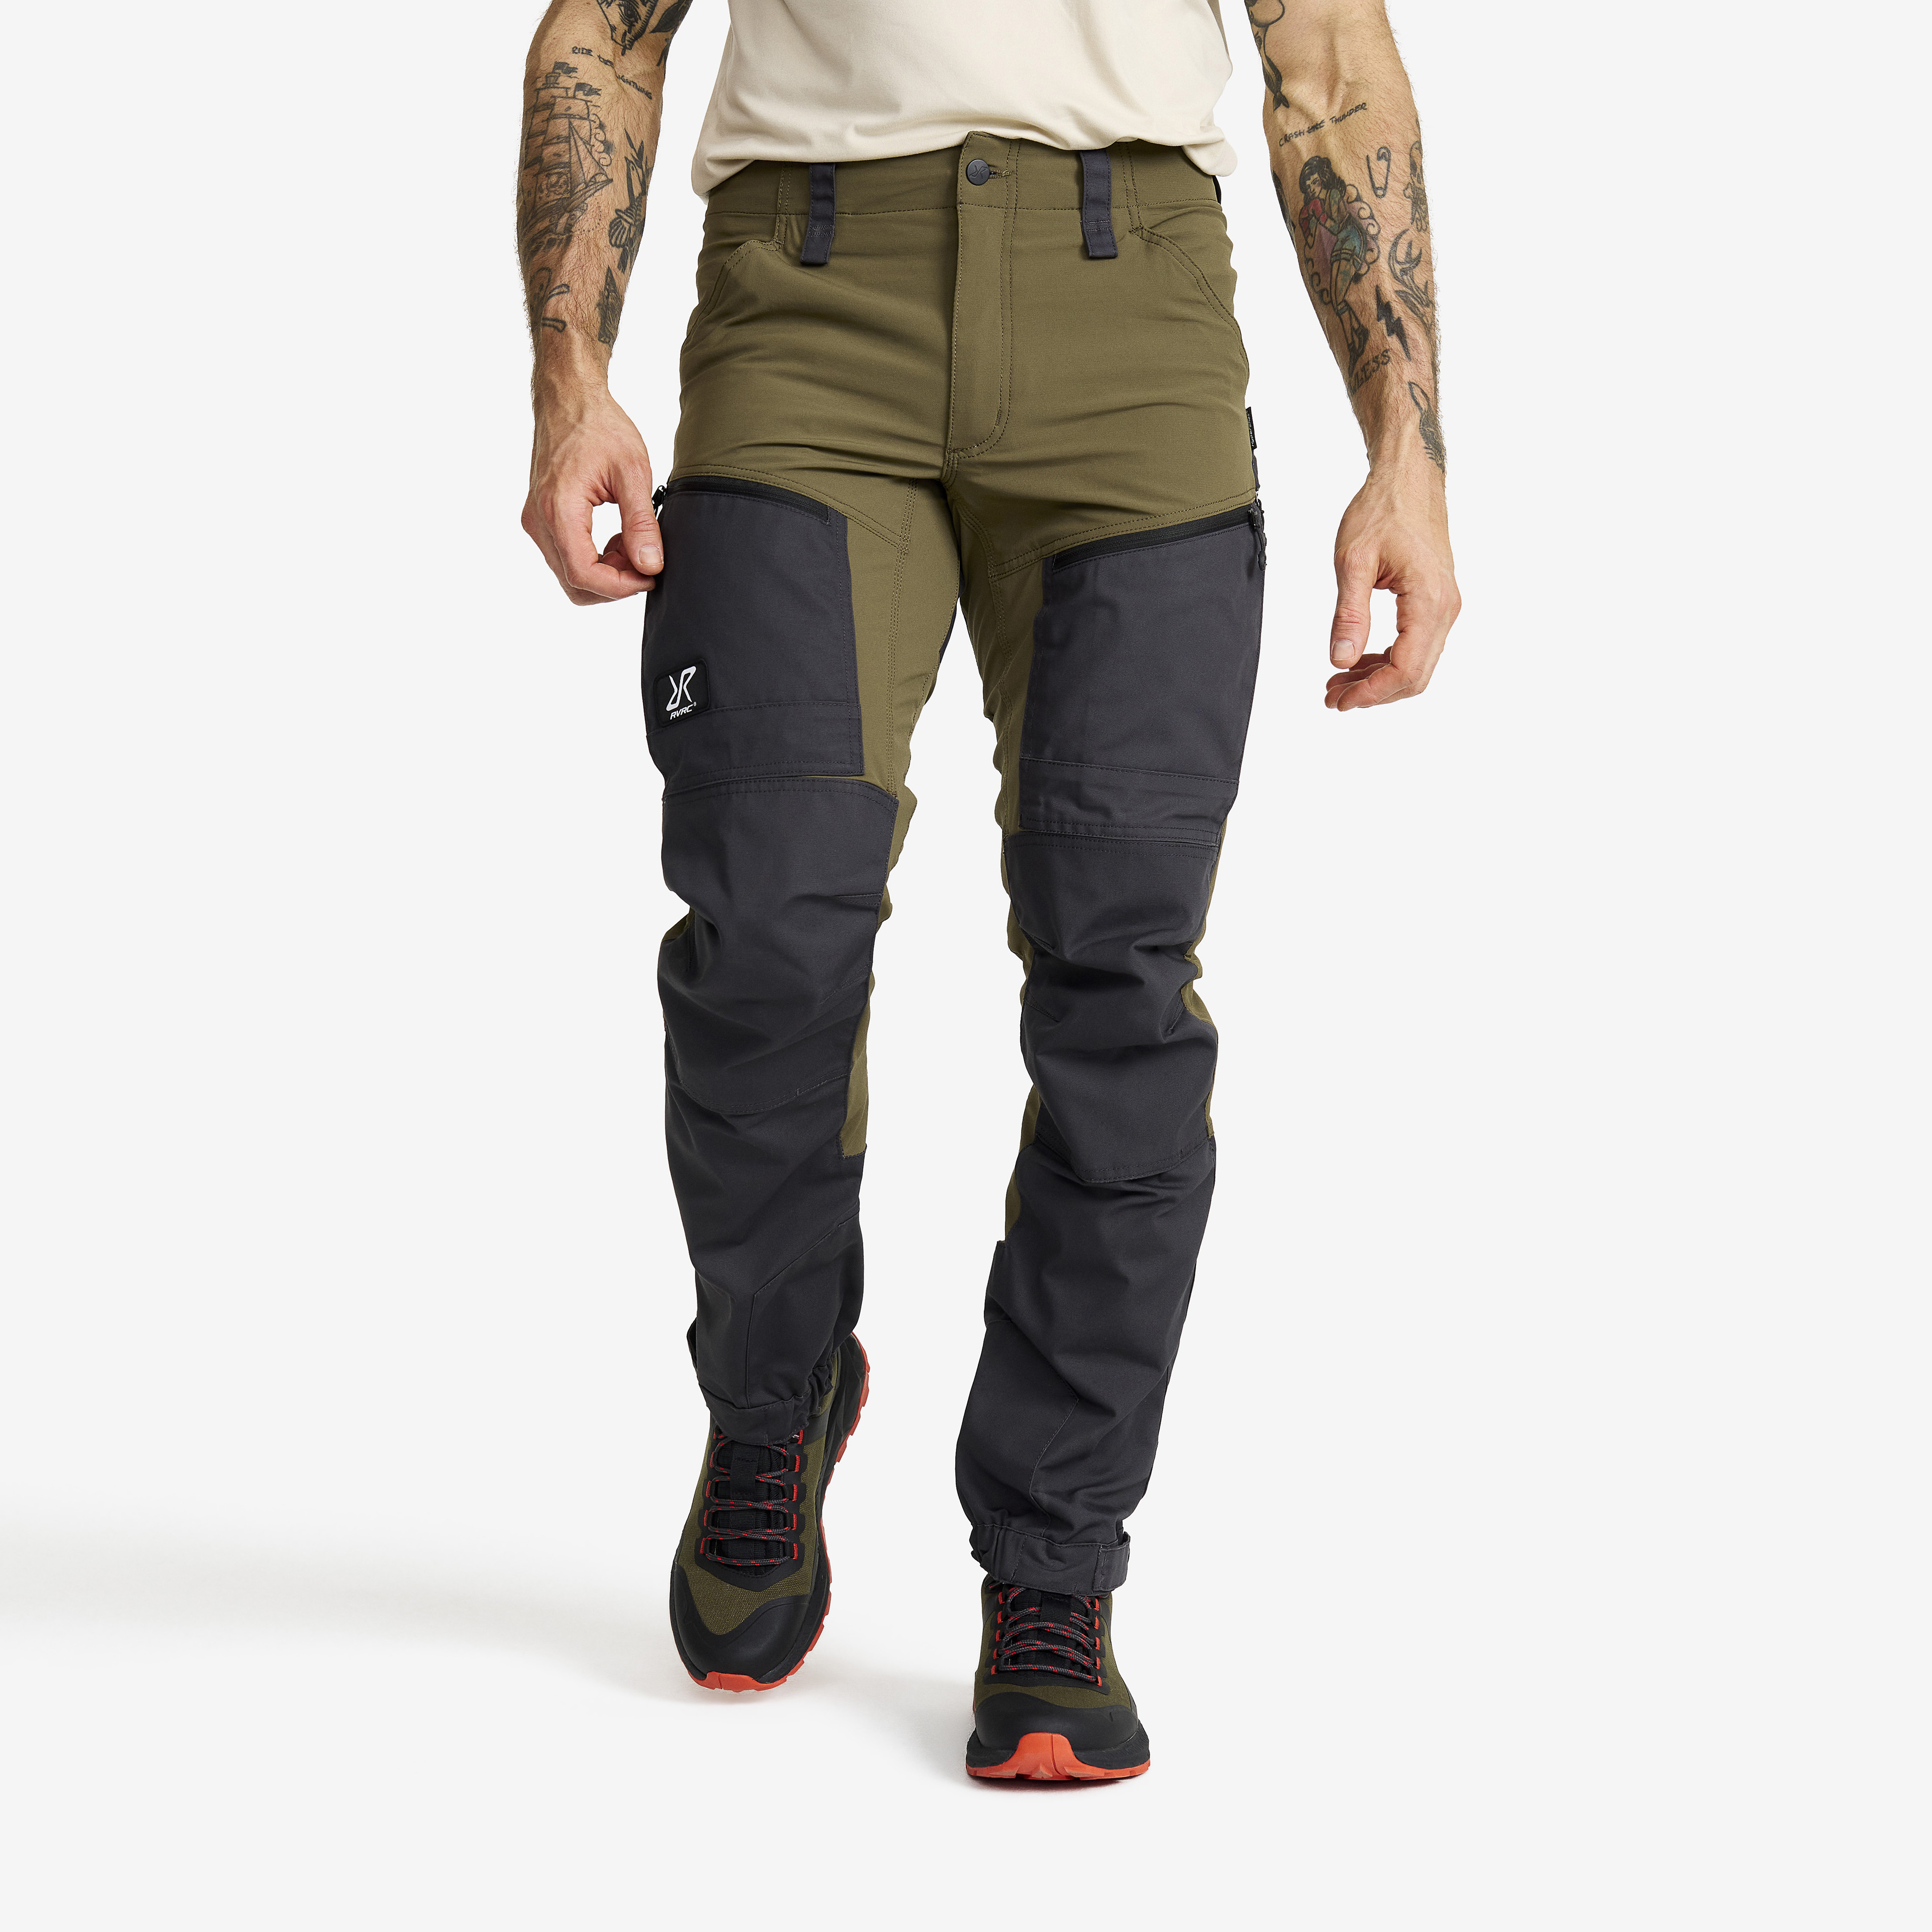 RVRC GP Pro turistické kalhoty pro muže v zelené barvě